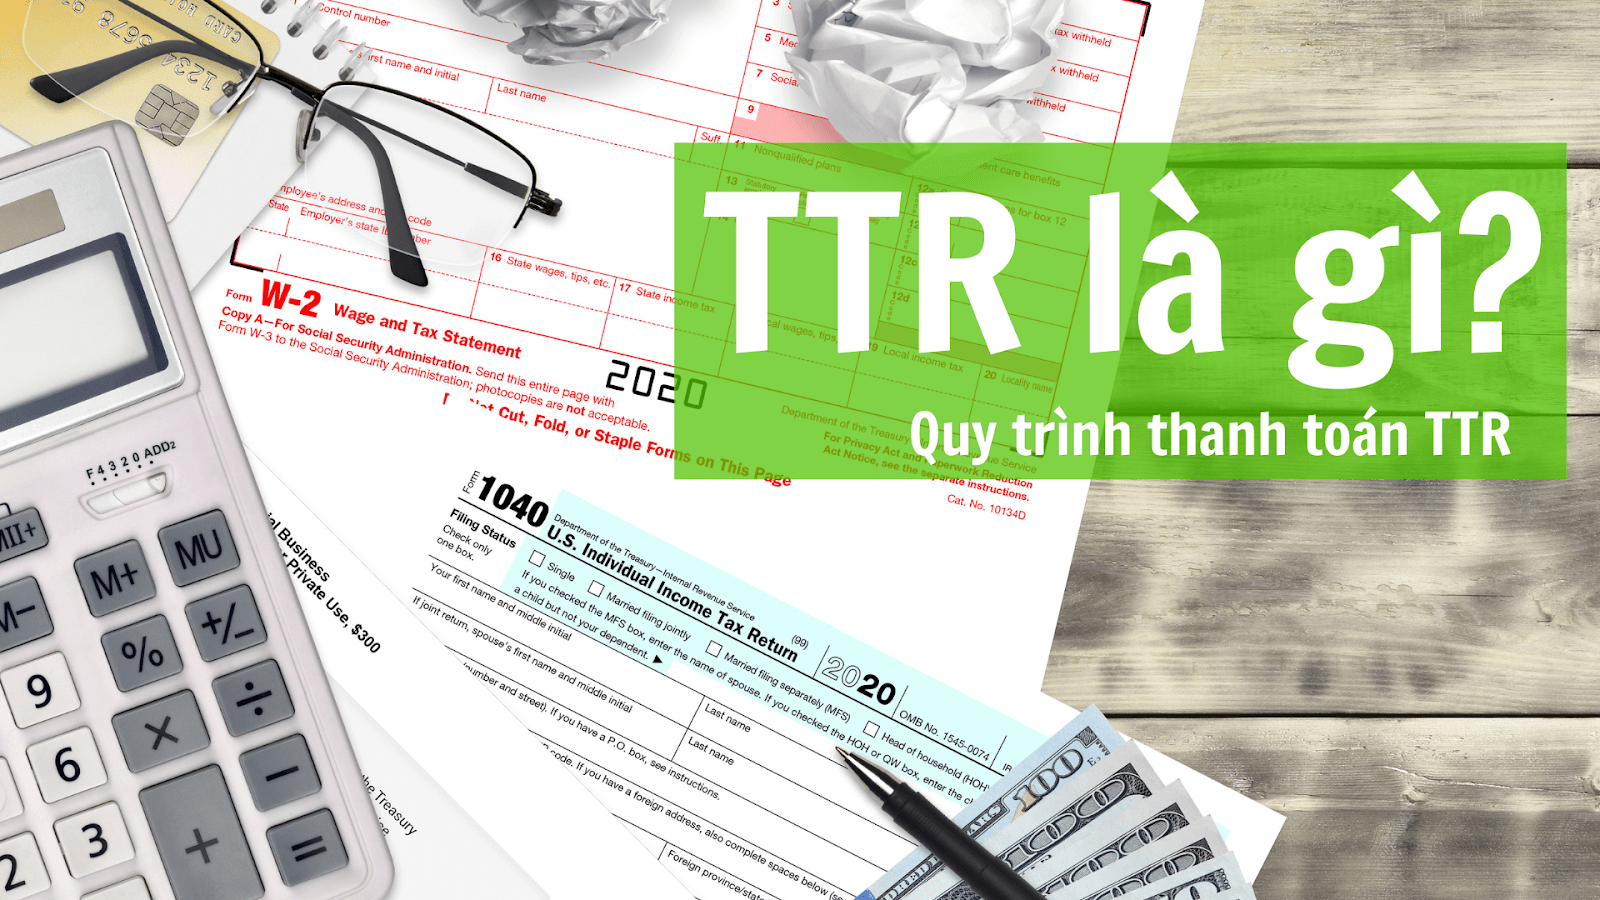 TTR là gì? Quy trình thanh toán TTR